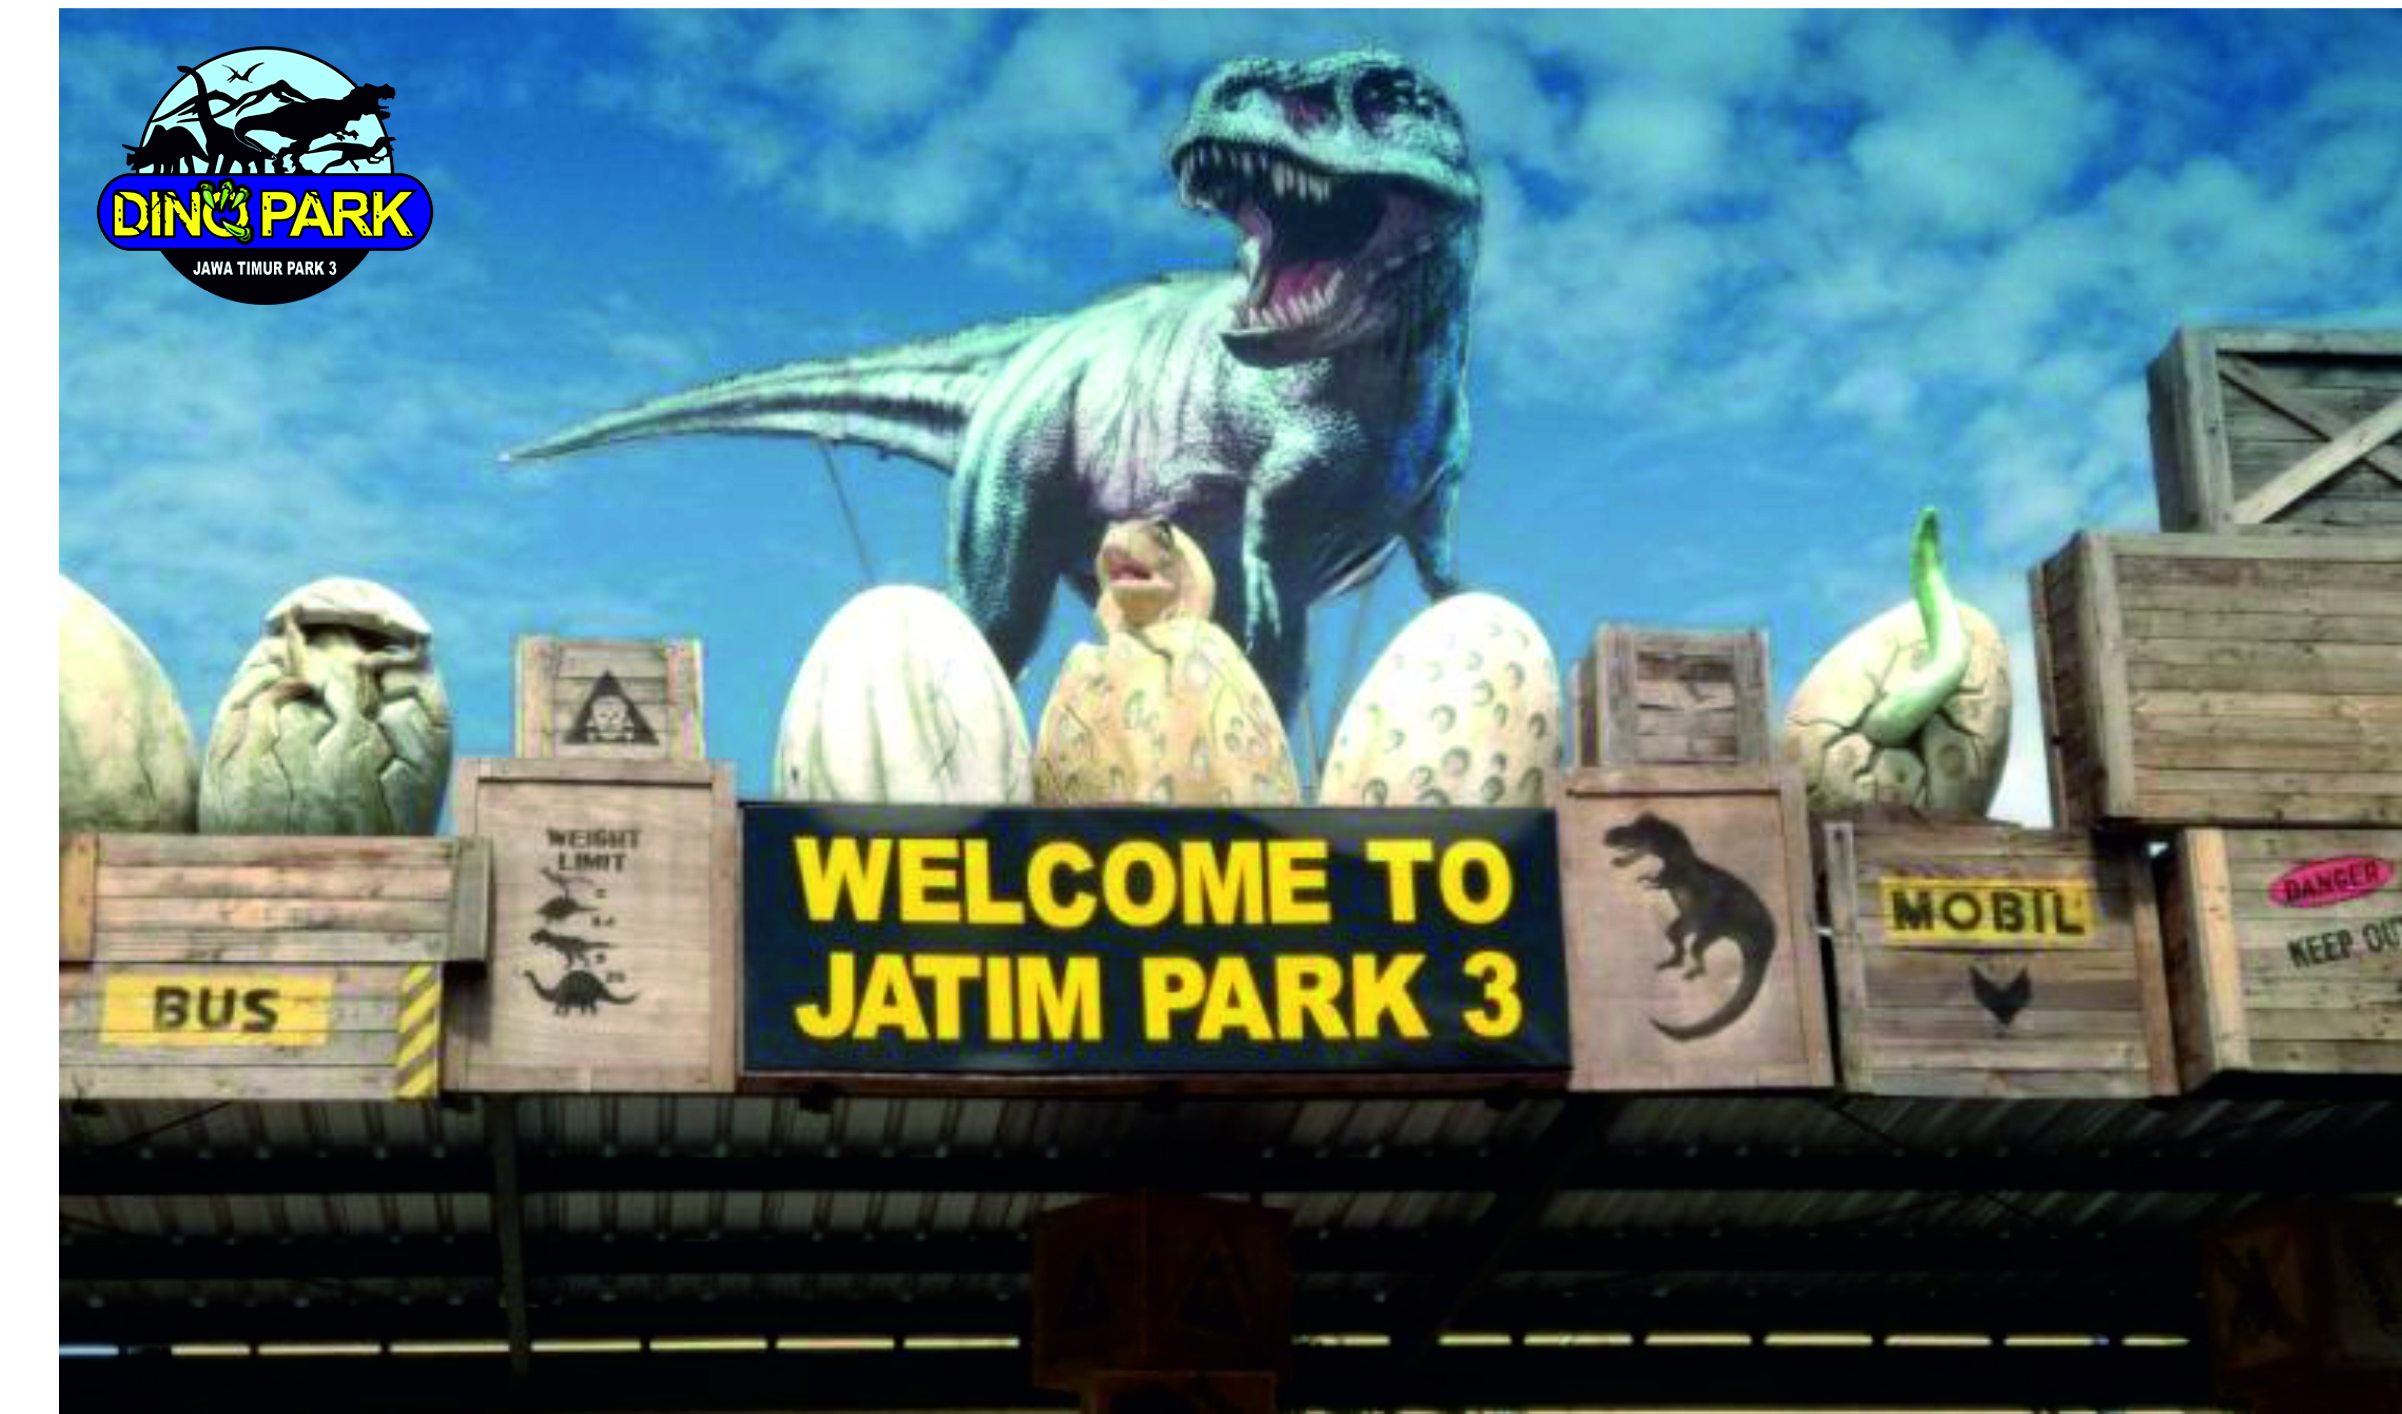 Jatim Park 3